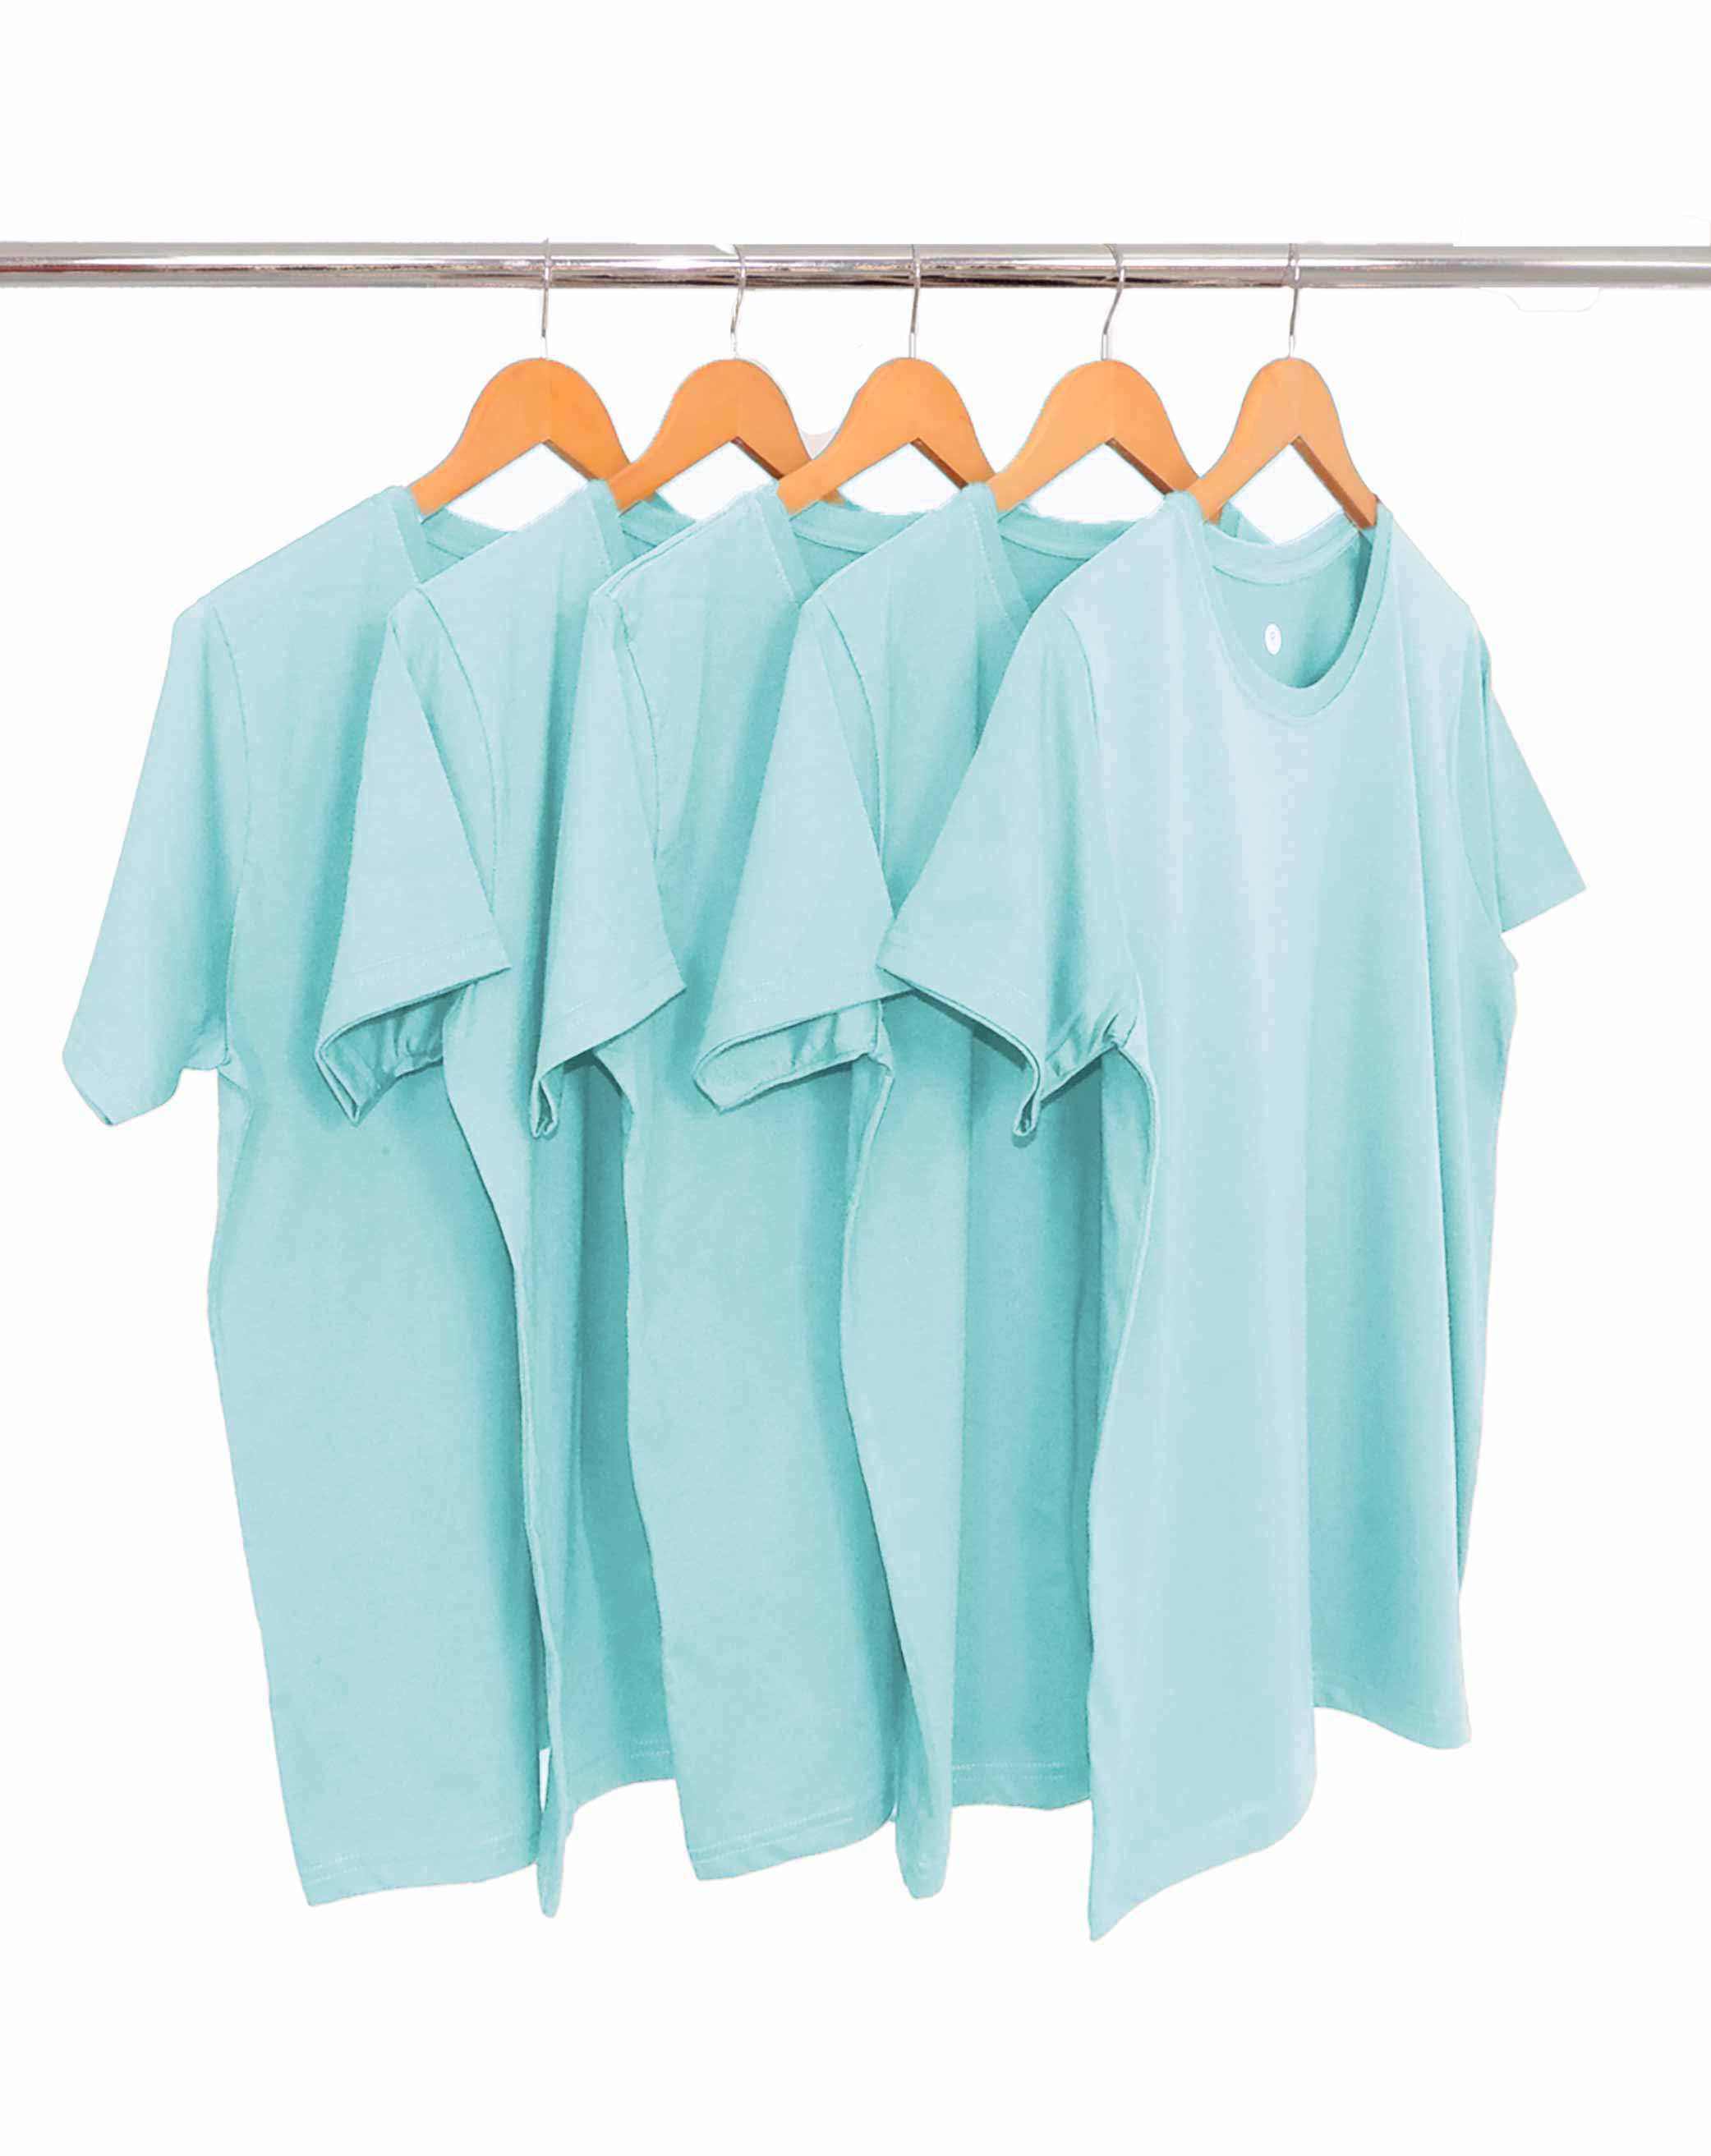 KIT 5 Camisetas de Algodão Premium Azul Claro